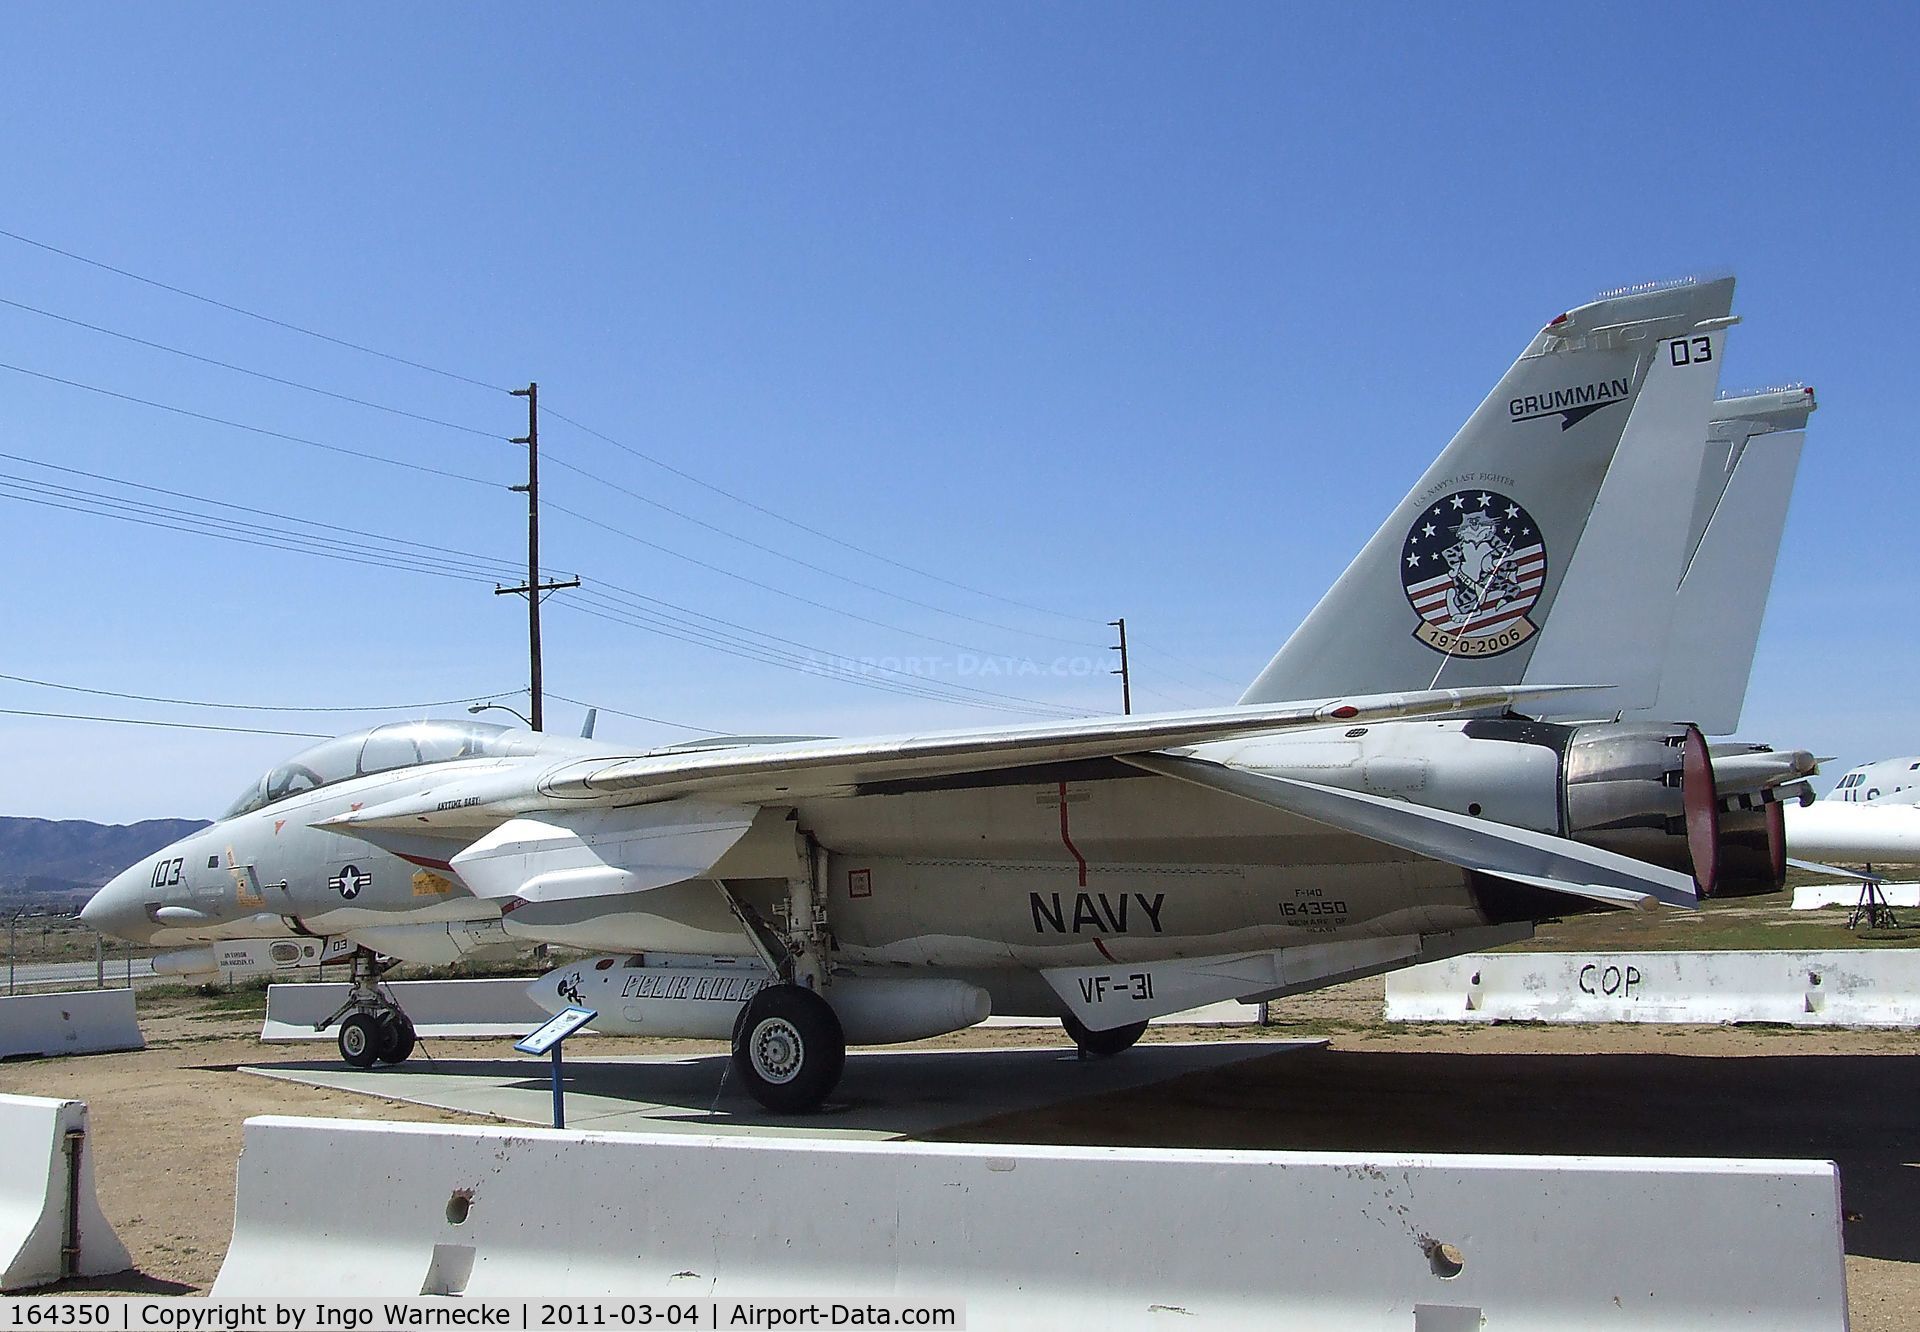 164350, Grumman F-14D Tomcat C/N 625, Grumman F-14D Tomcat at the Joe Davies Heritage Airpark, Palmdale CA